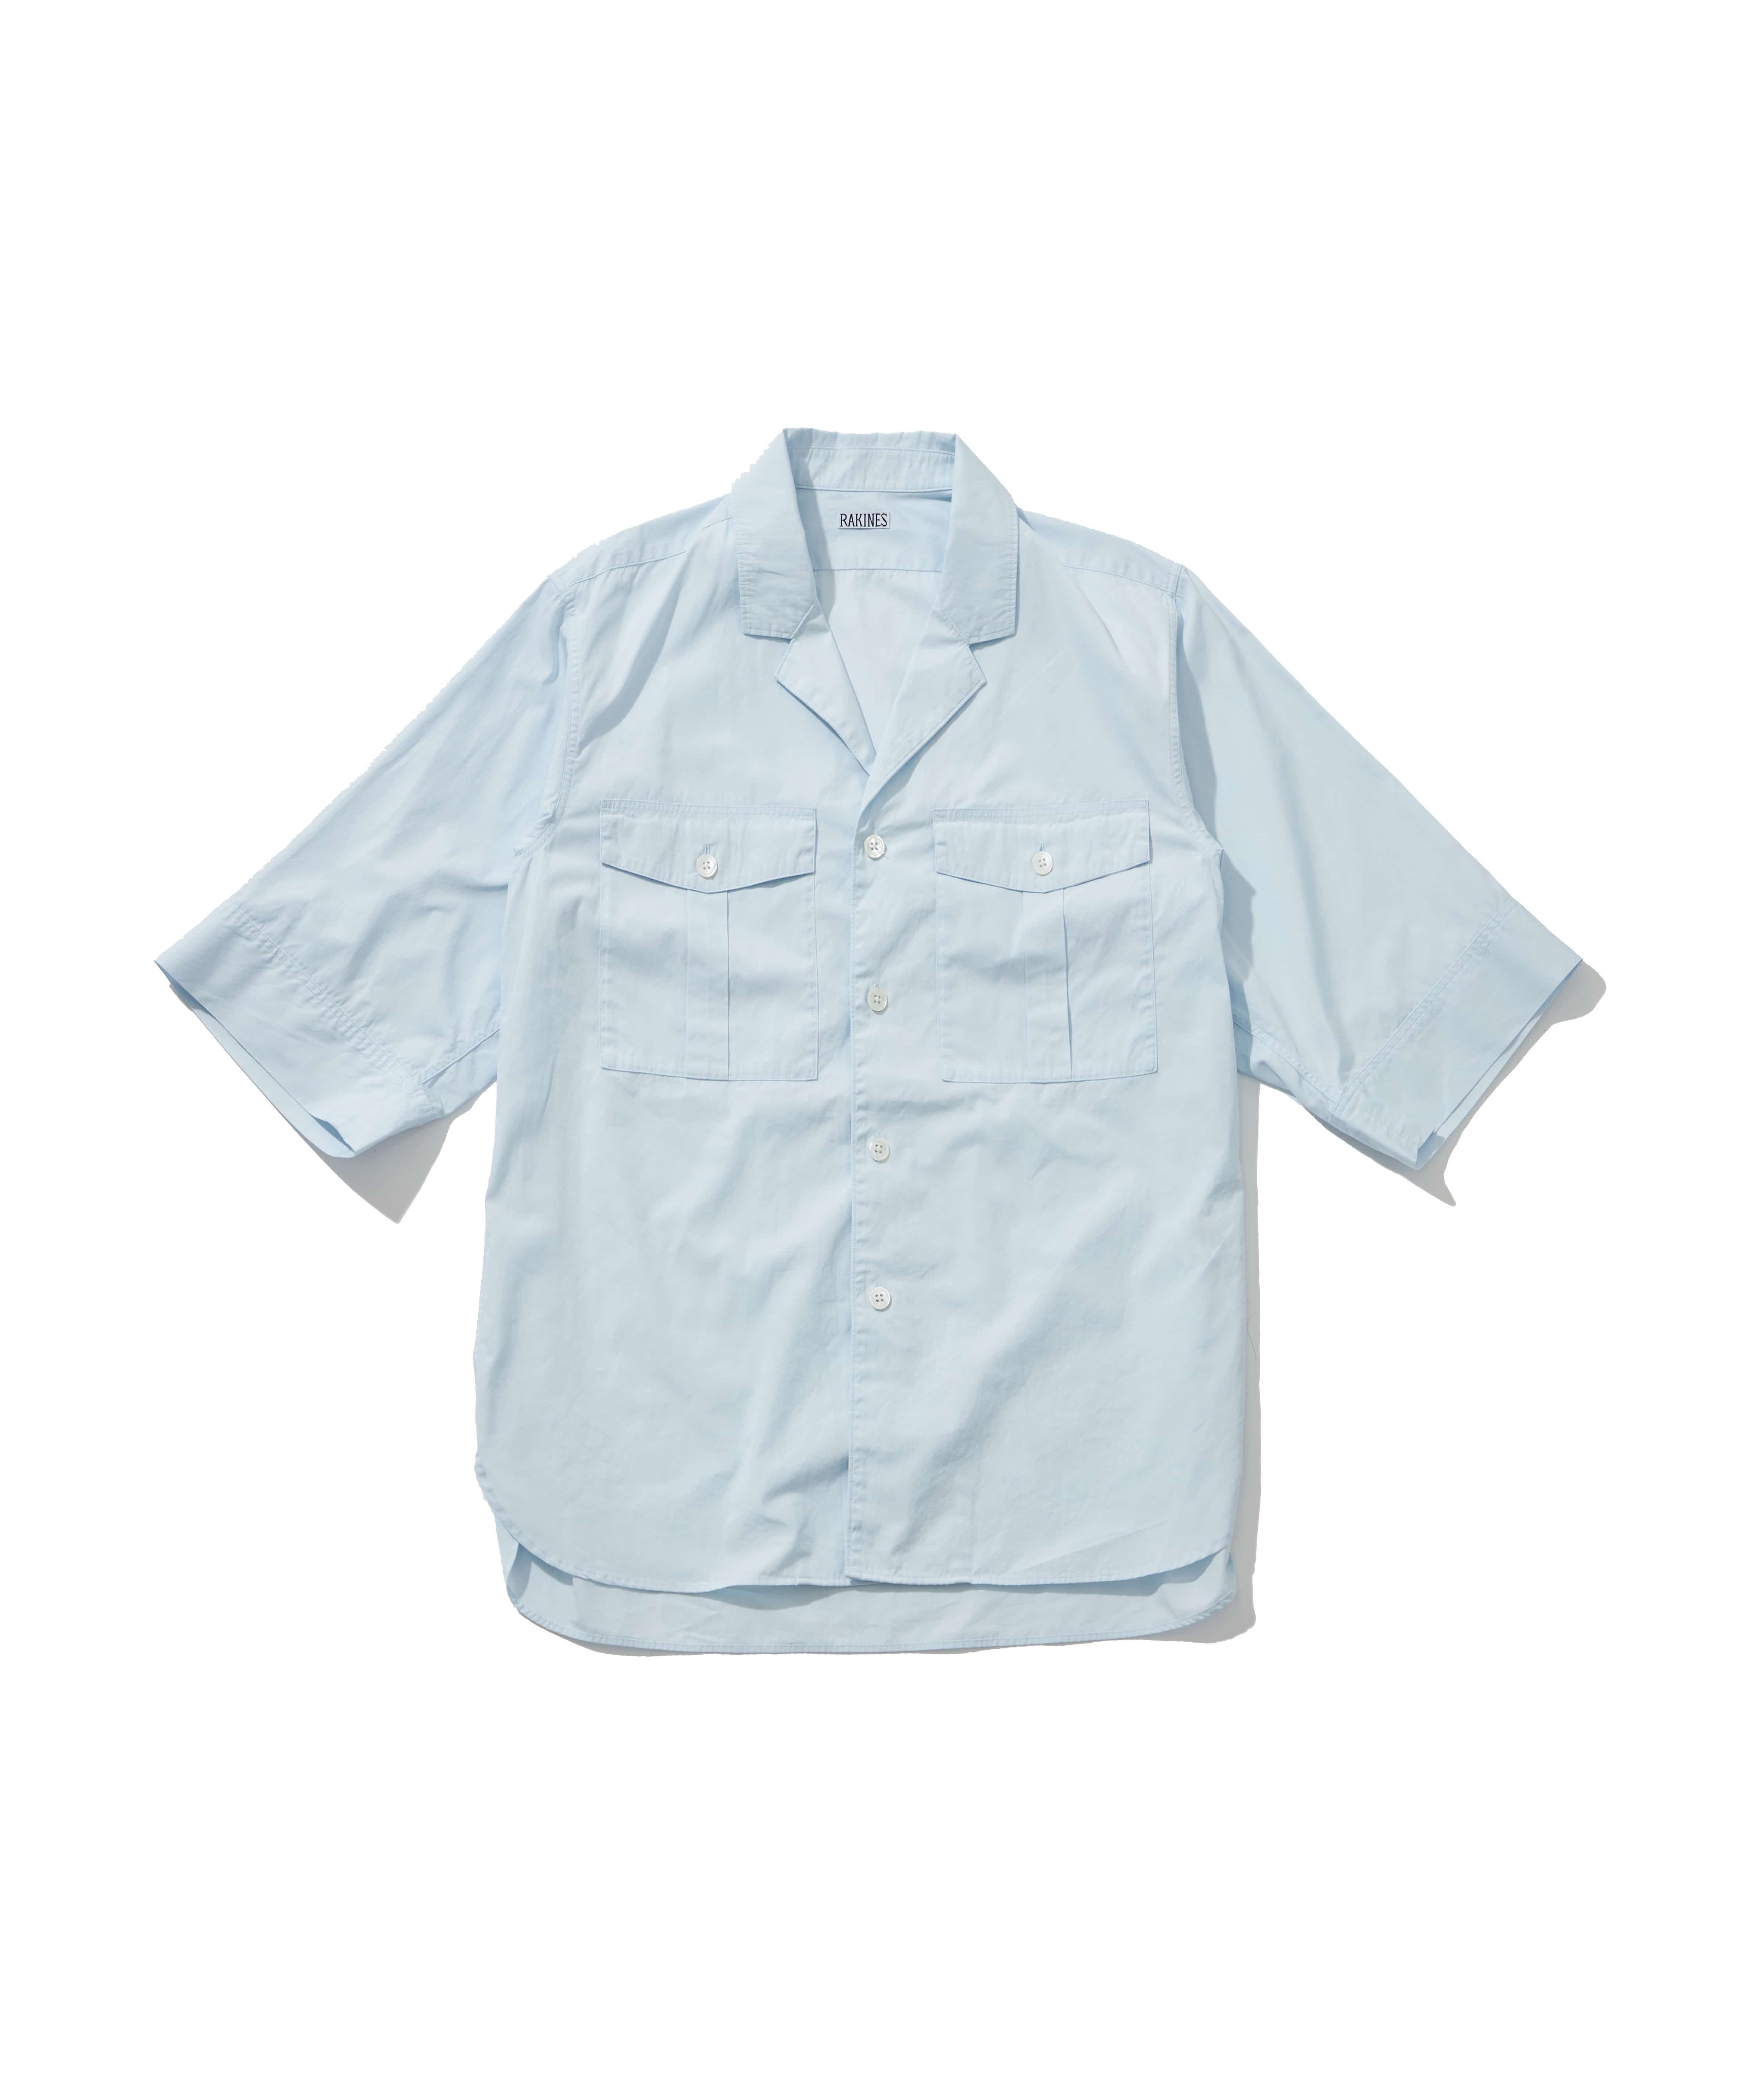 Trinity chambray / Explorer shirt